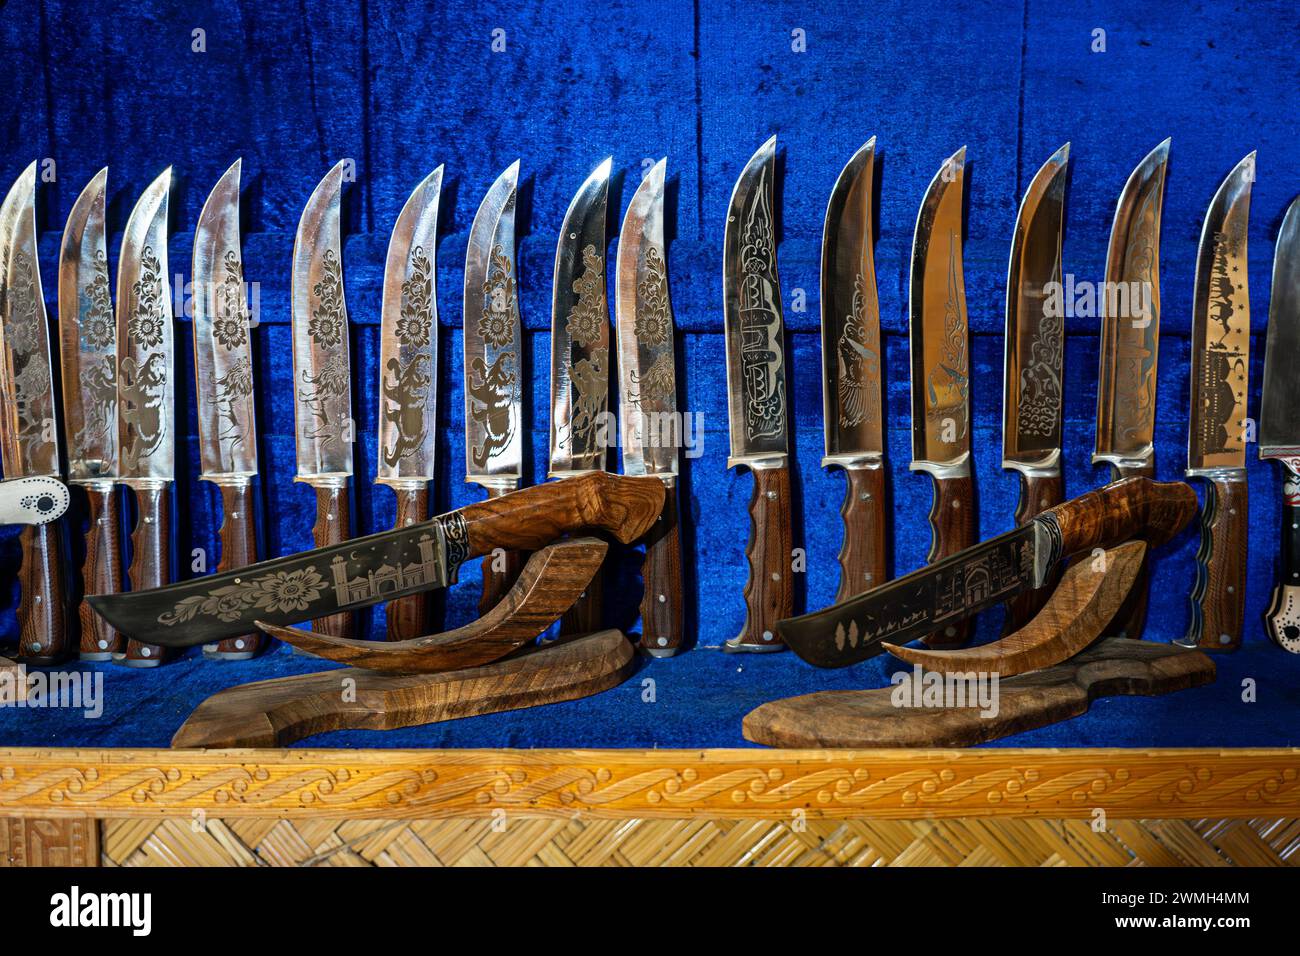 Messer aus Stahl auf der Theke im Geschäft auf blauem Hintergrund. Das Pchak ist ein traditionelles usbekisches Messer mit einer gebogenen Form. Stockfoto